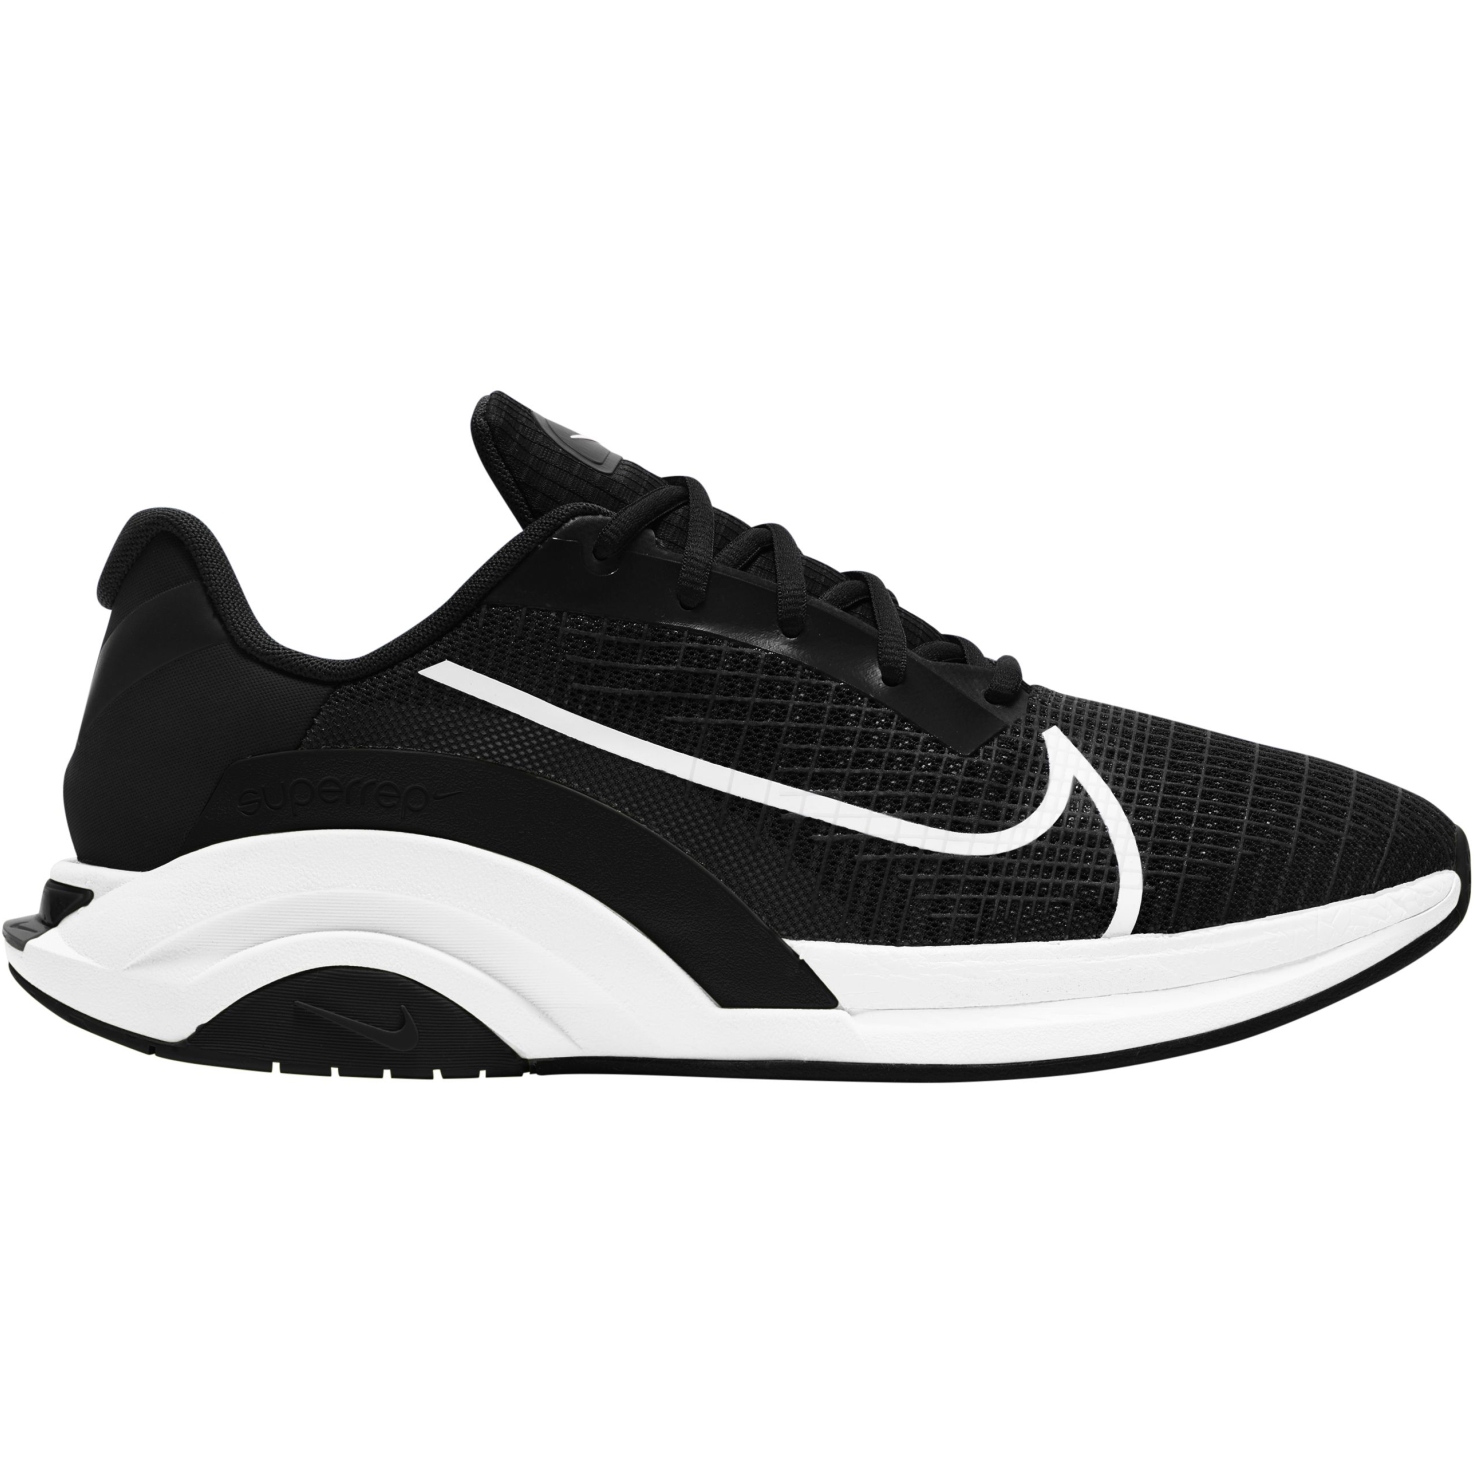 Produktbild von Nike ZoomX SuperRep Surge Herren Trainingsschuhe - black/white-black CU7627-002